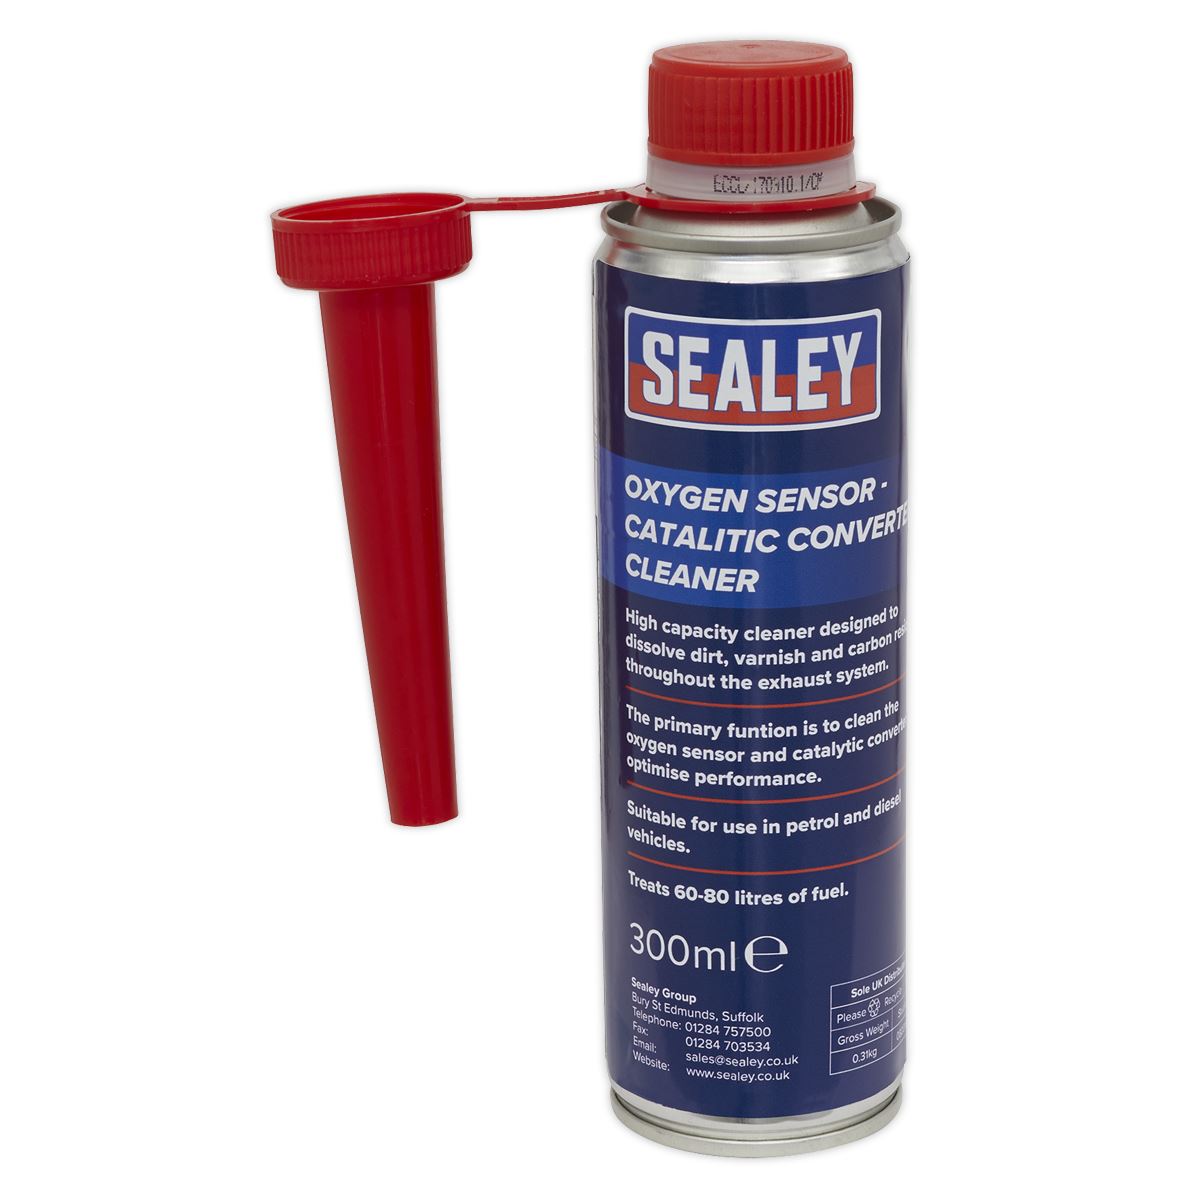 Sealey Oxygen Sensor - Catalytic Converter Cleaner 300ml